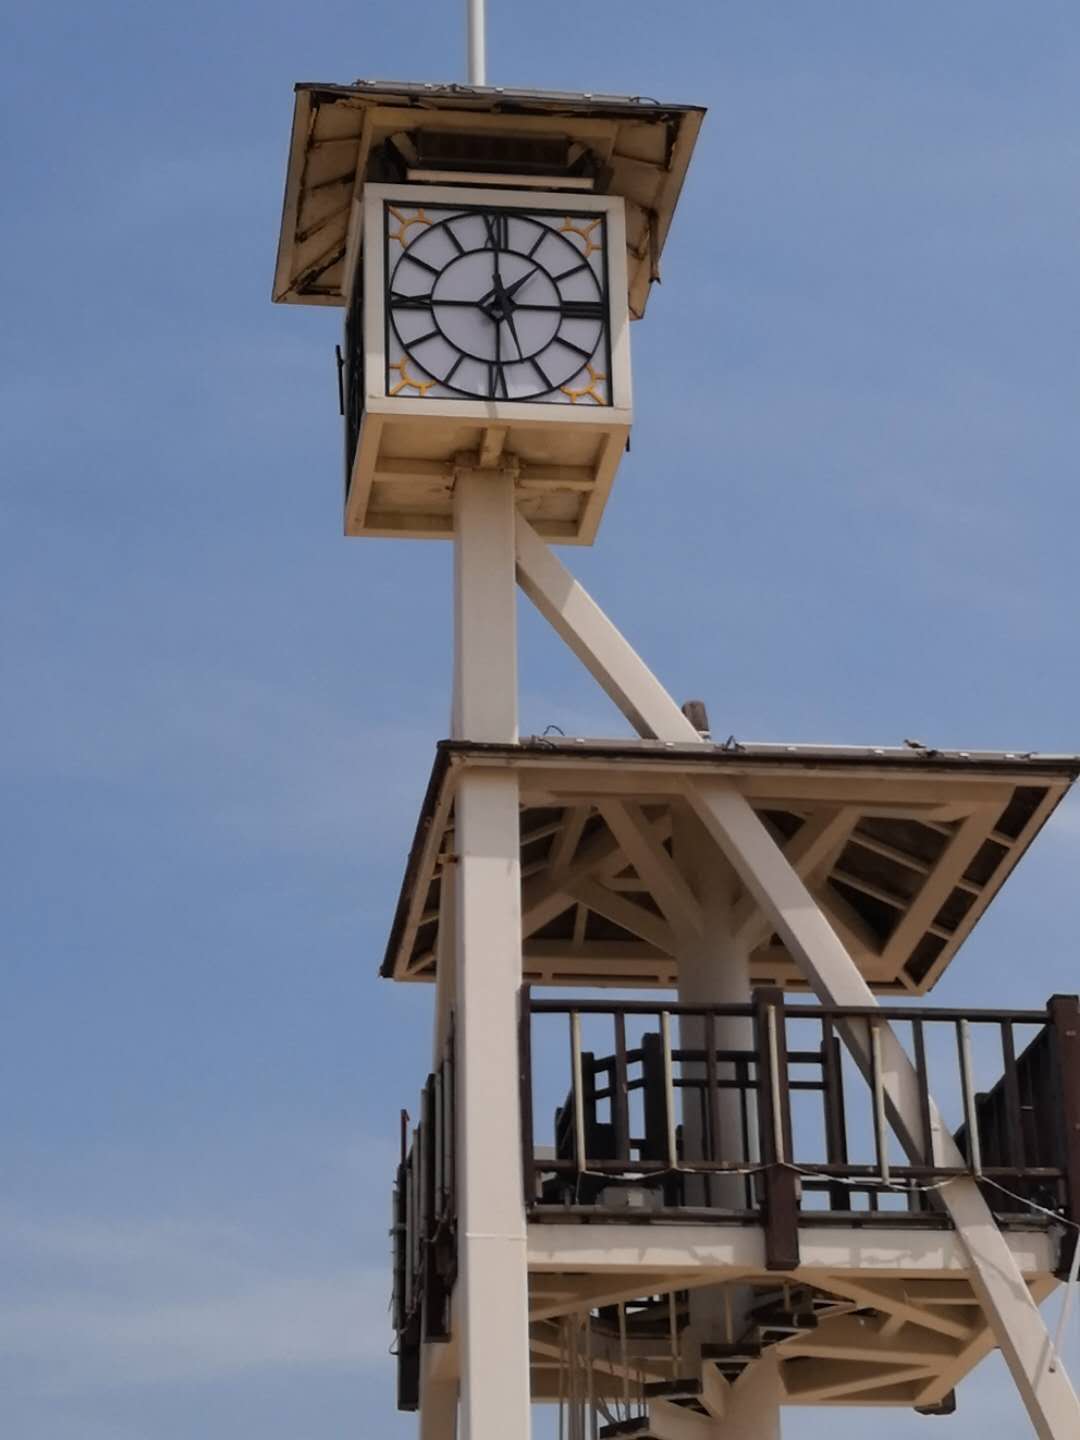  塔楼大钟建筑塔钟厂家直销价格优惠质量保证